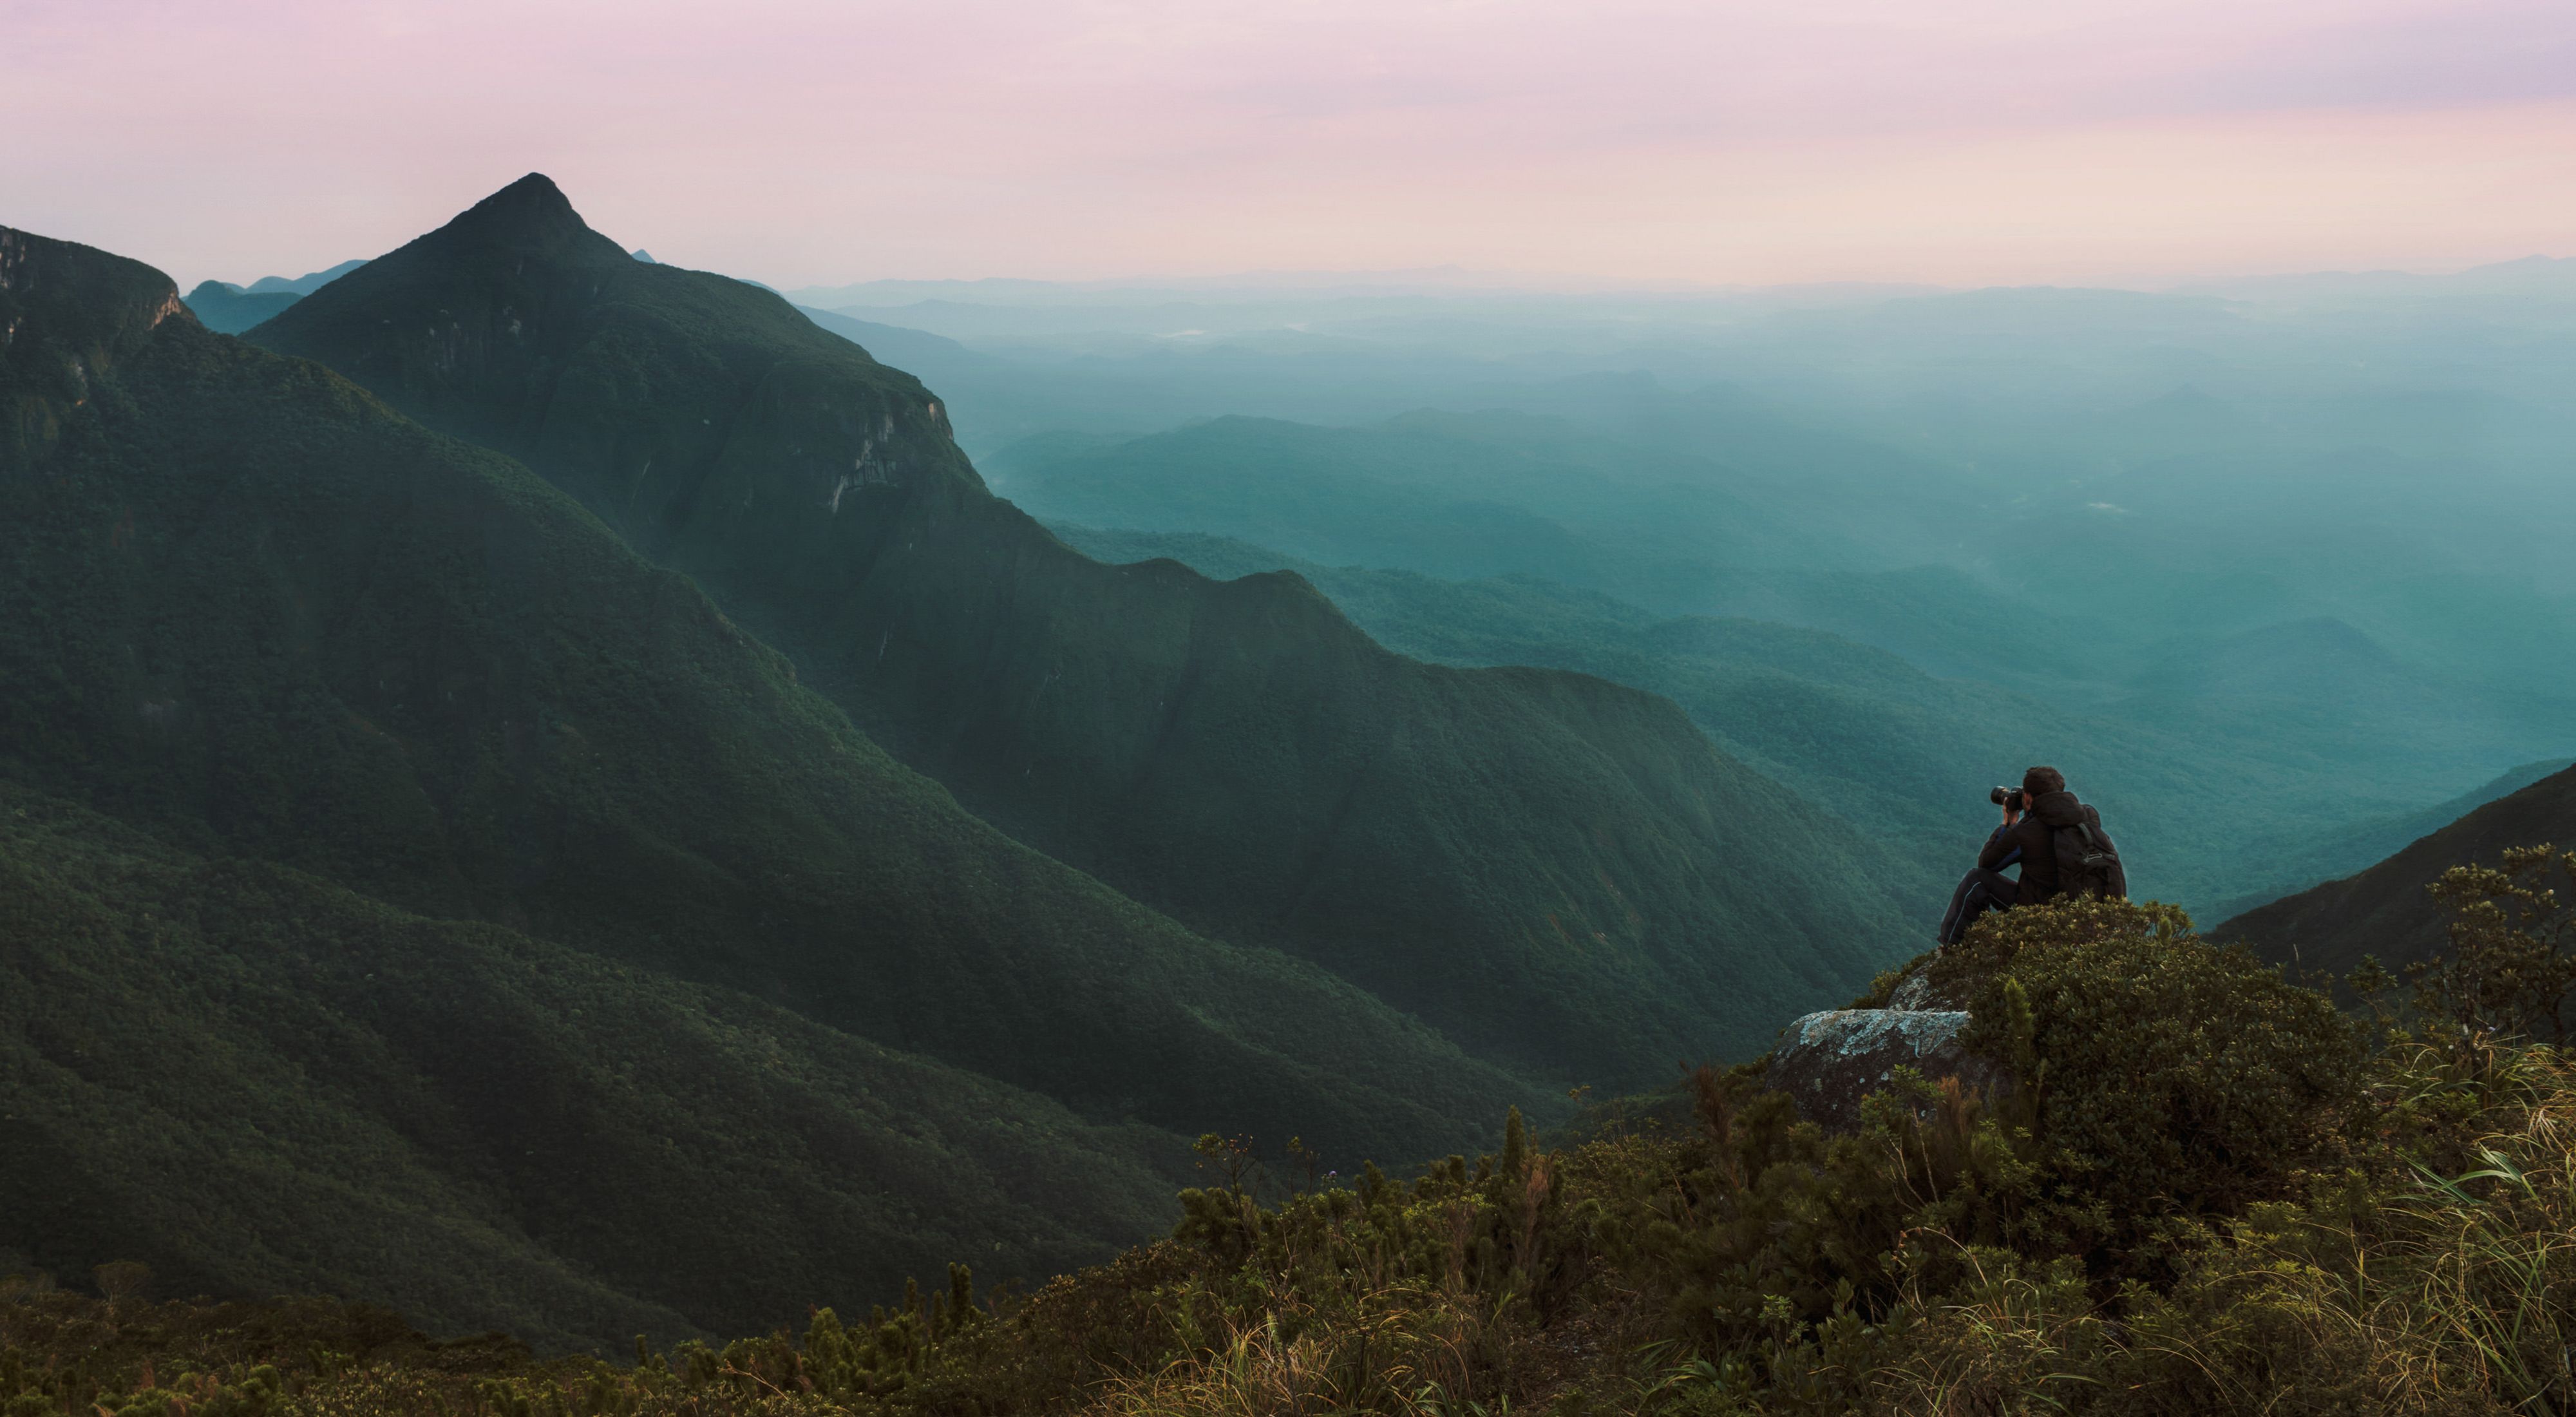 Fotógrafo no Pico do Paraná, a montanha mais alta do Sul do Brasil, com 1.877m.